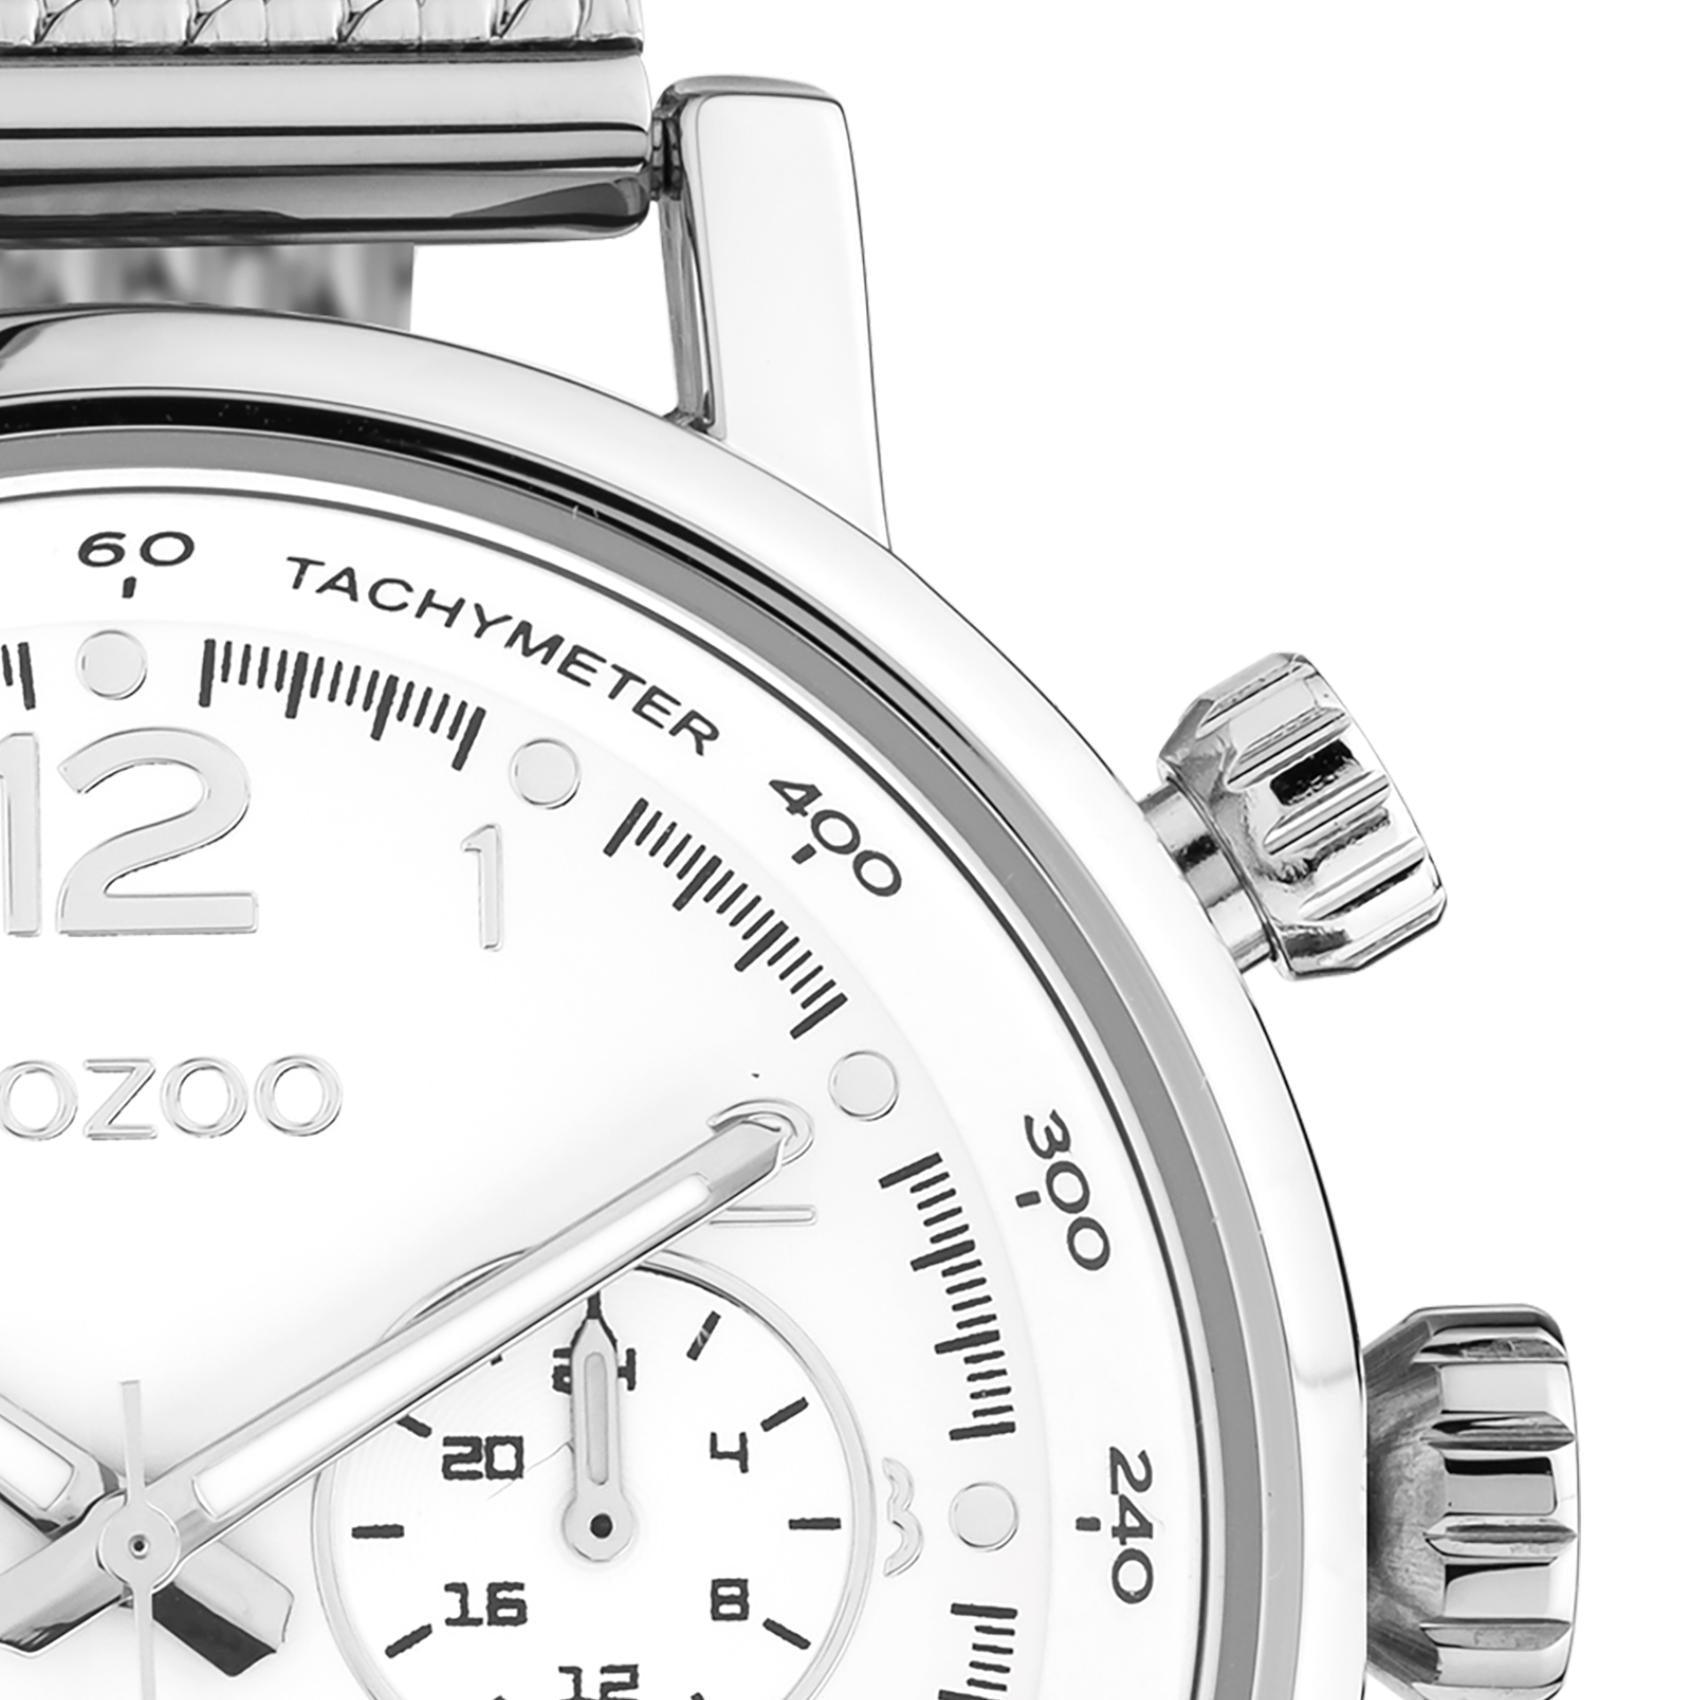 Ρολόι Oozoo C10900 χρονογράφος με ασημί ατσάλινο μπρασελέ ,άσπρο καντράν διαμέτρου 42mm και μηχανισμό μπαταρίας quartz.